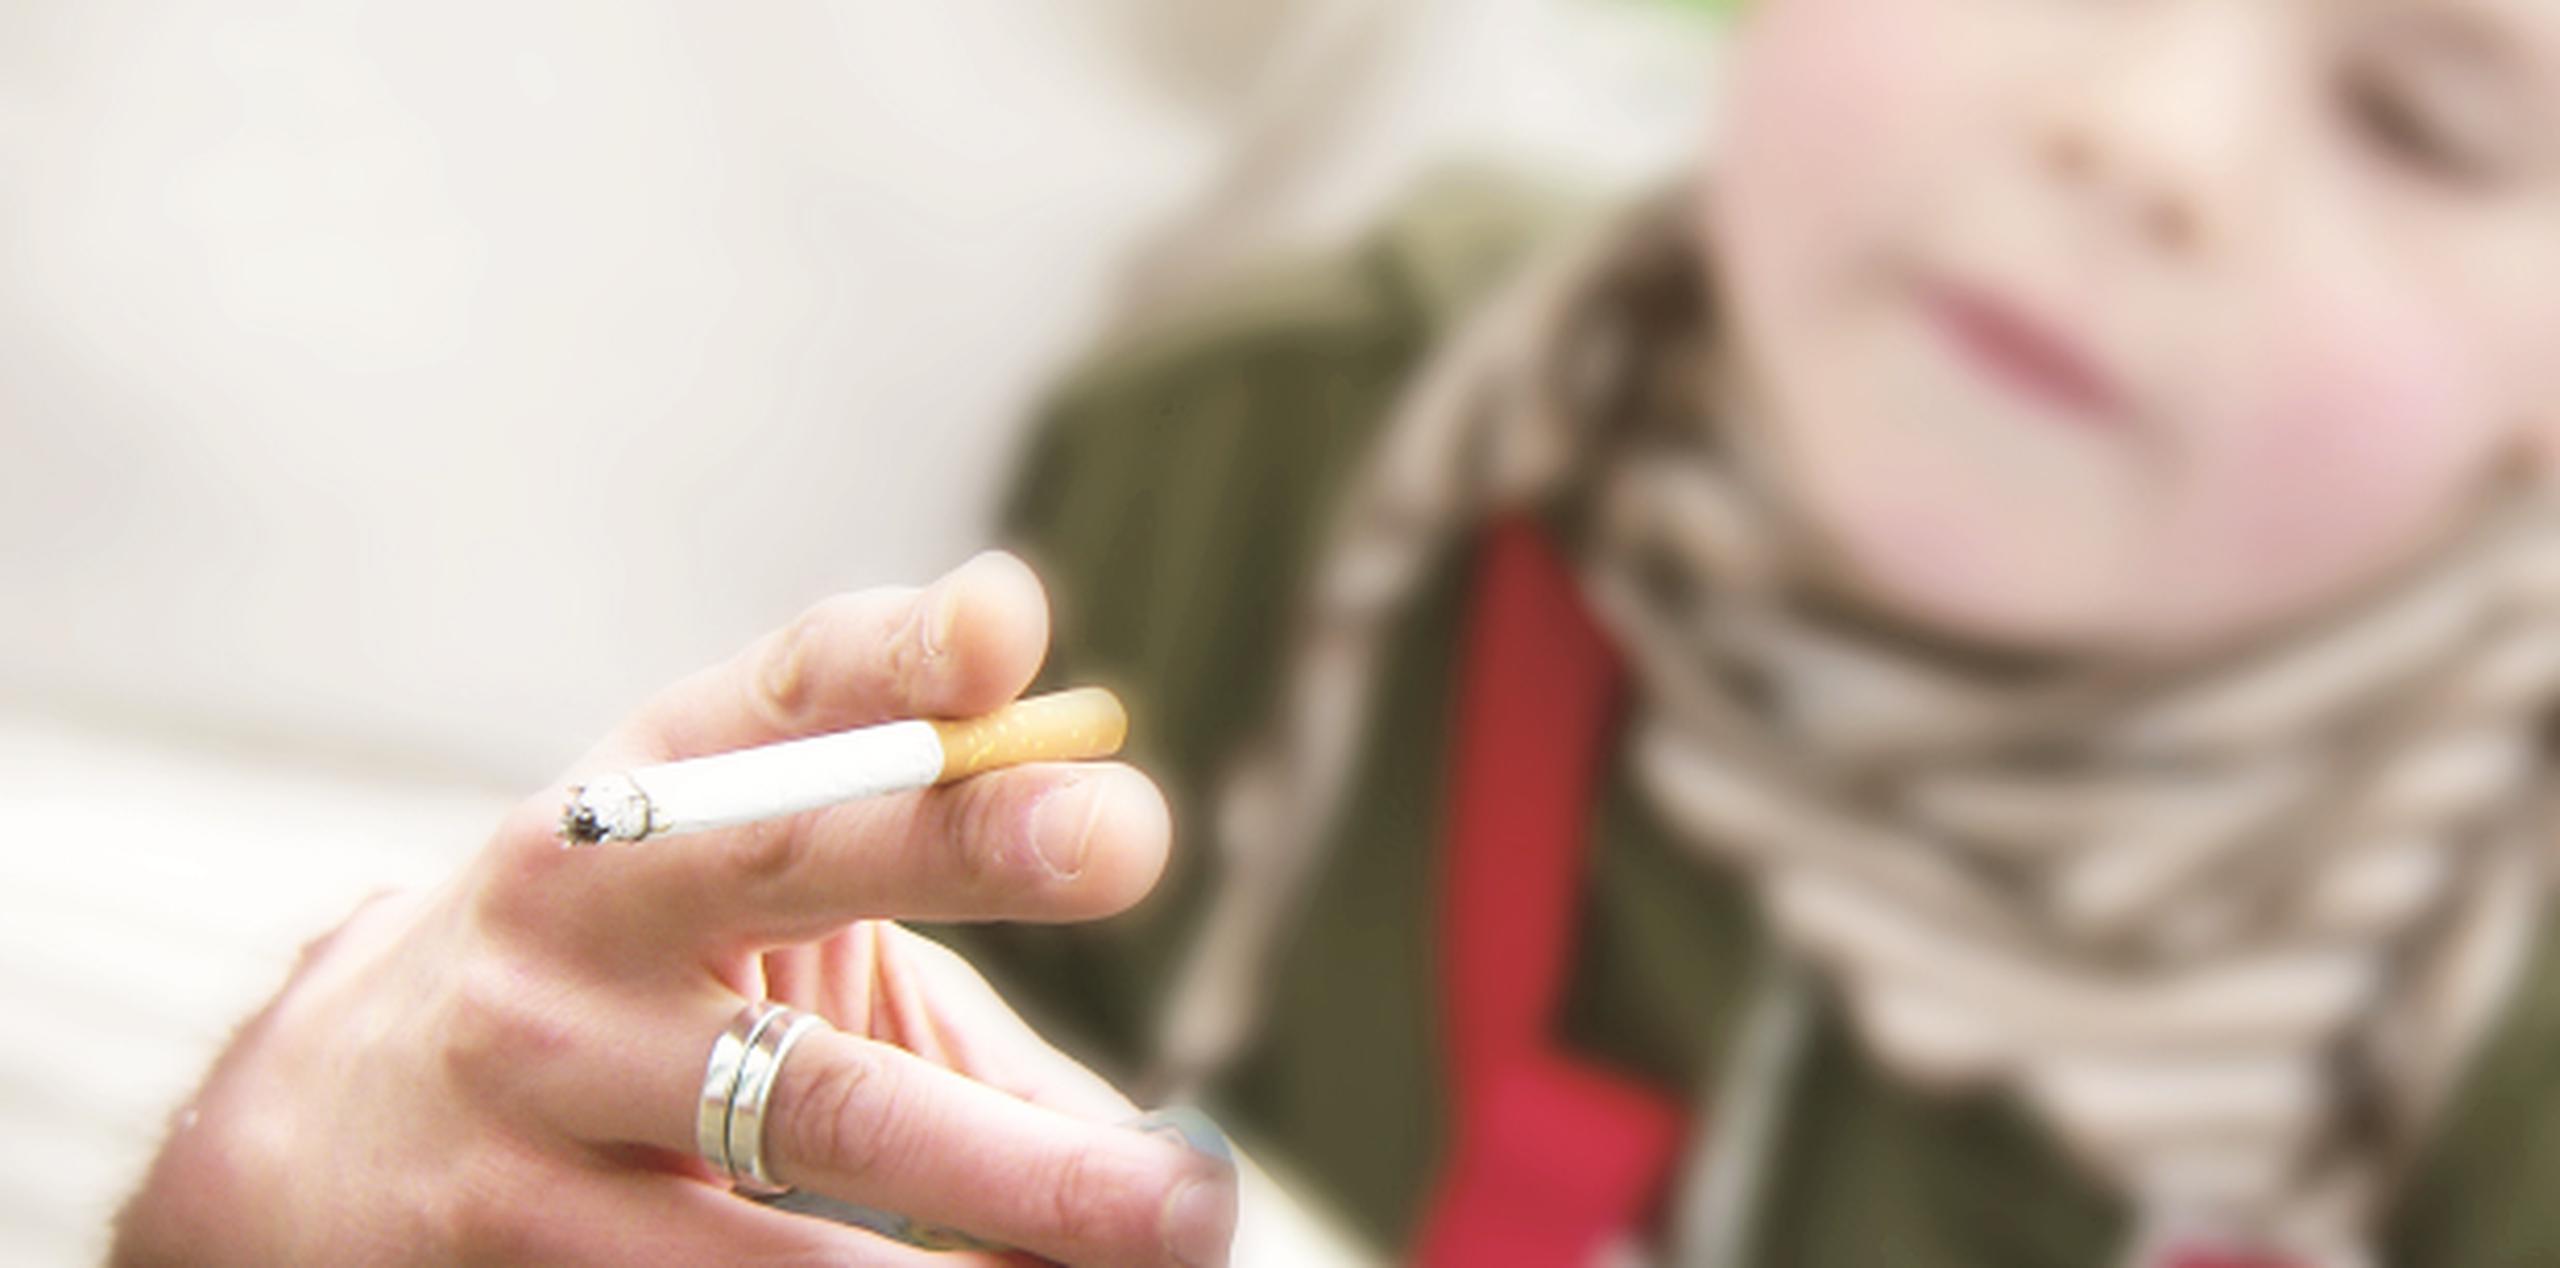 La mayoría de los fumadores empieza el hábito durante la adolescencia. (Archivo)